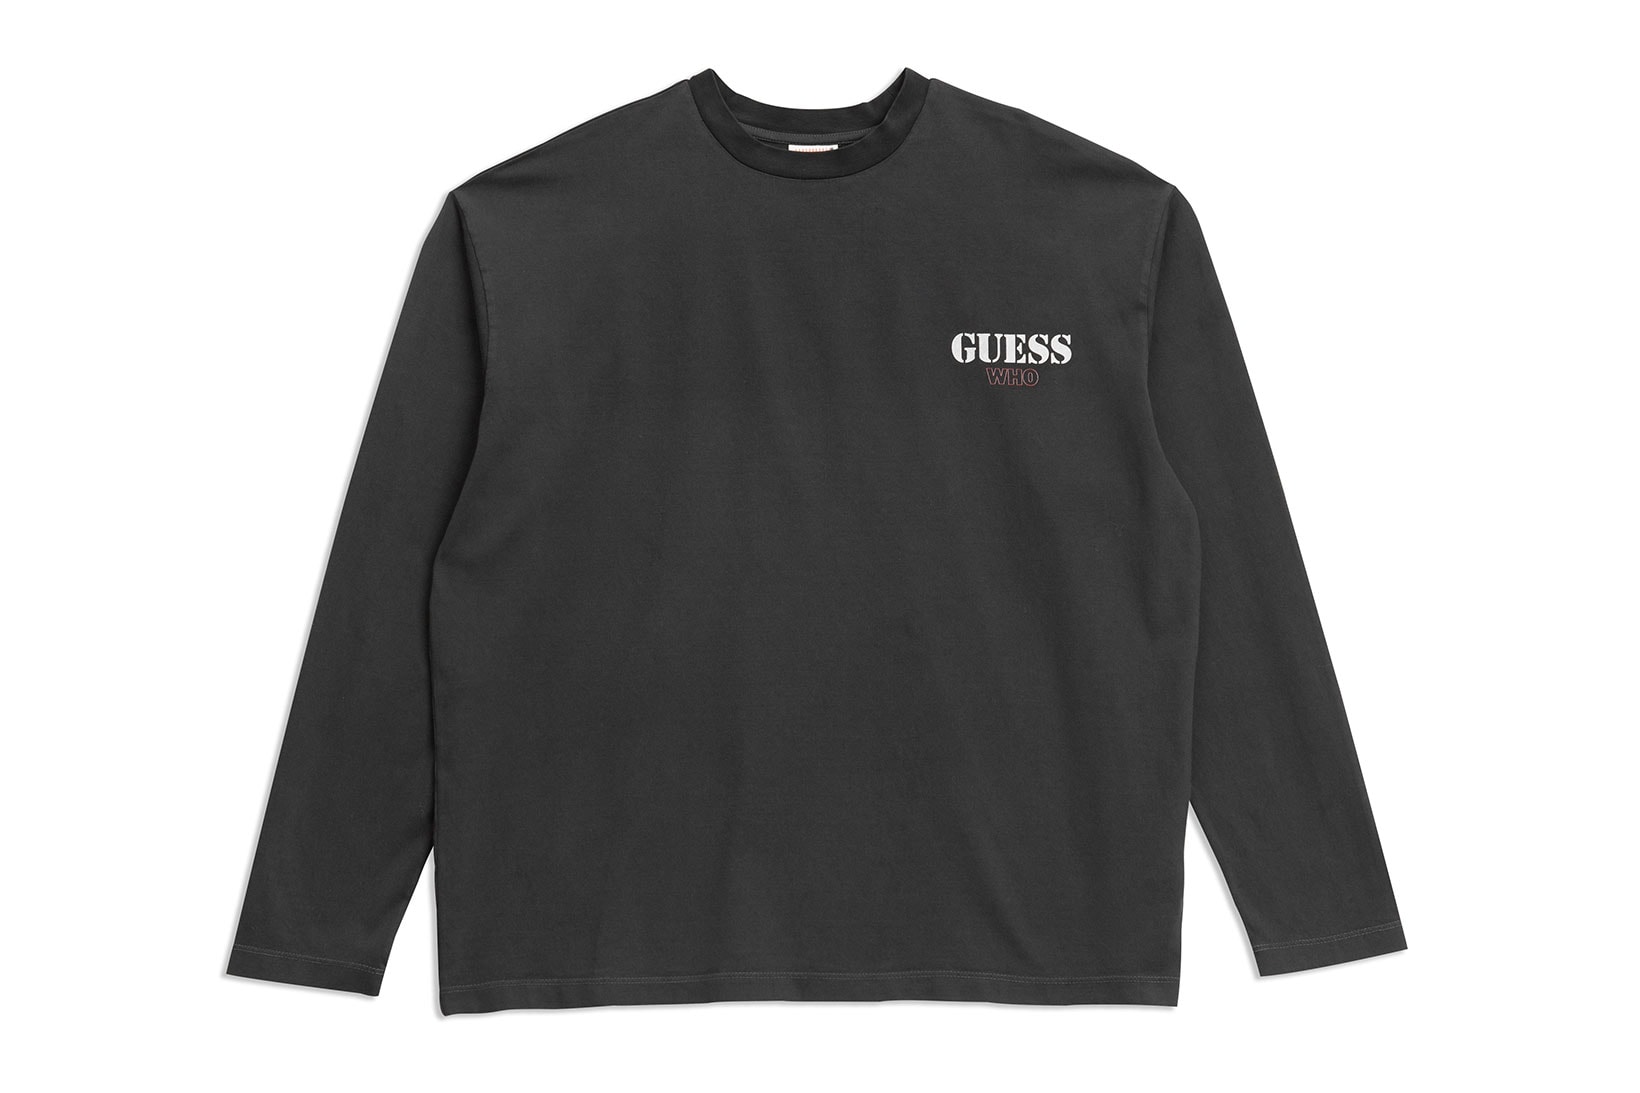 GUESS Originals Don Toliver Life of a Album Merch T-shirt Logo